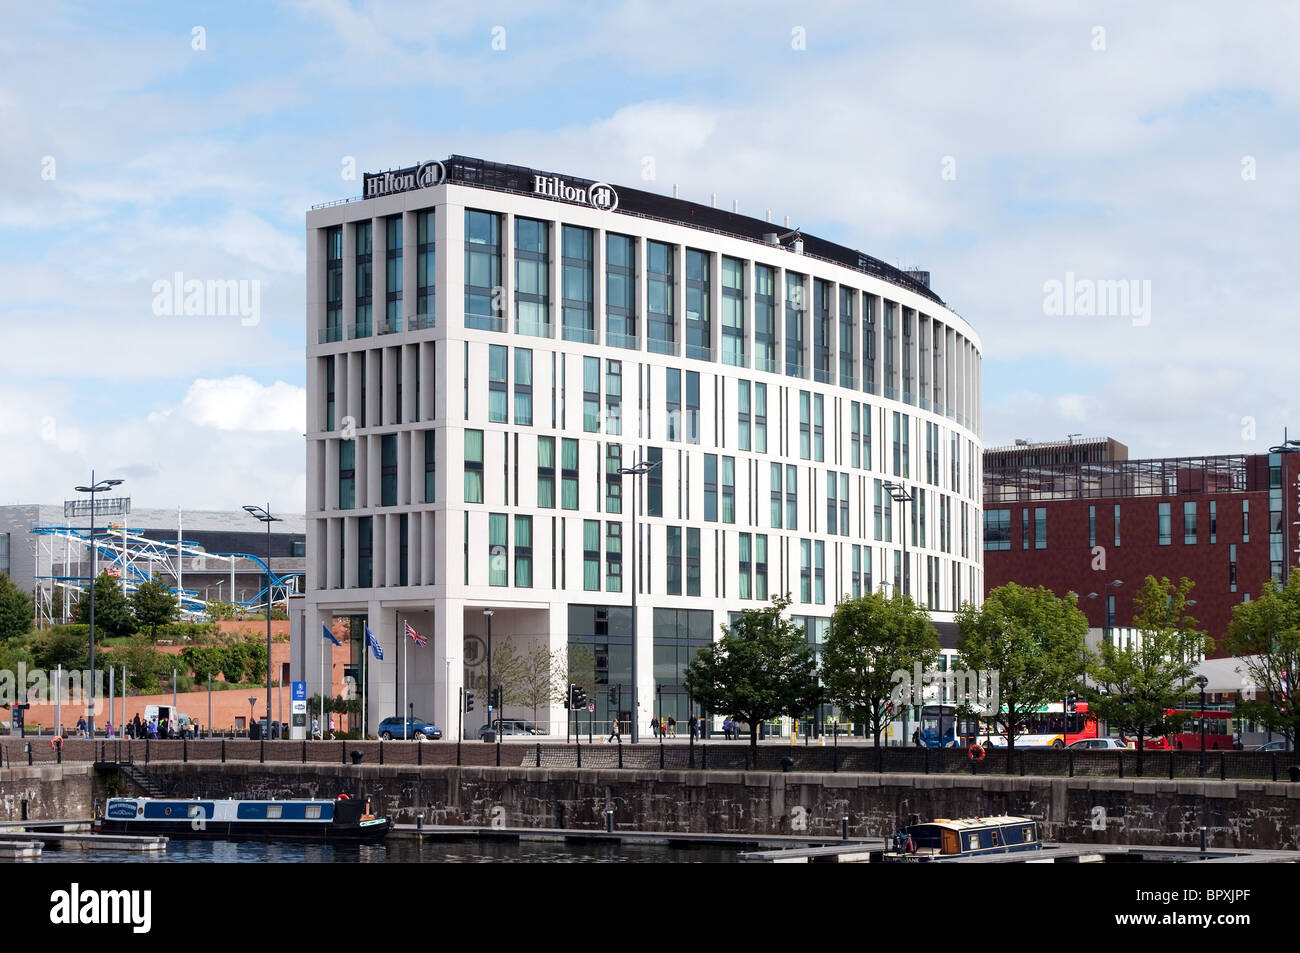 L'hôtel Hilton sur le dock road, à Liverpool, Royaume-Uni Banque D'Images